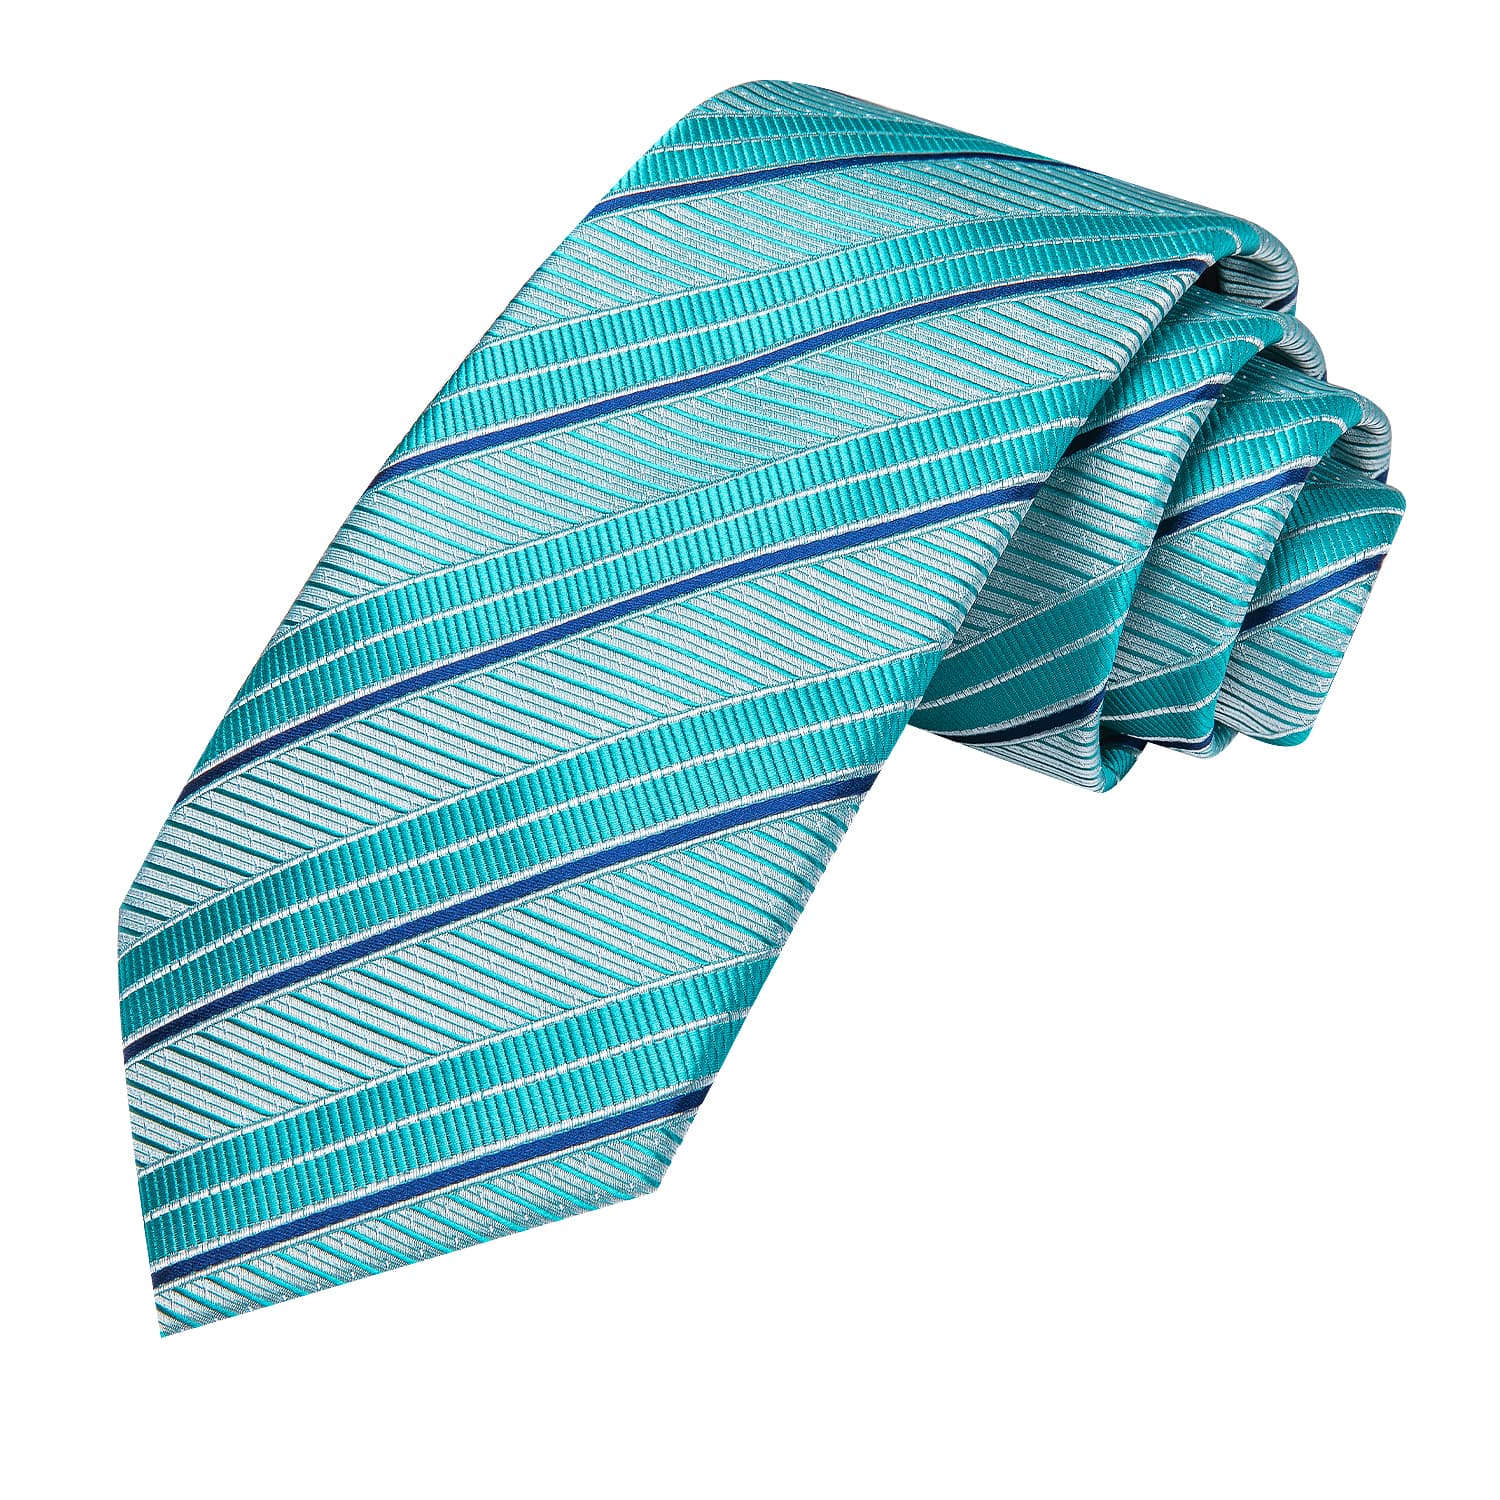 Hi-Tie Striped Tie Cyan Teal Silk Necktie Set for Men